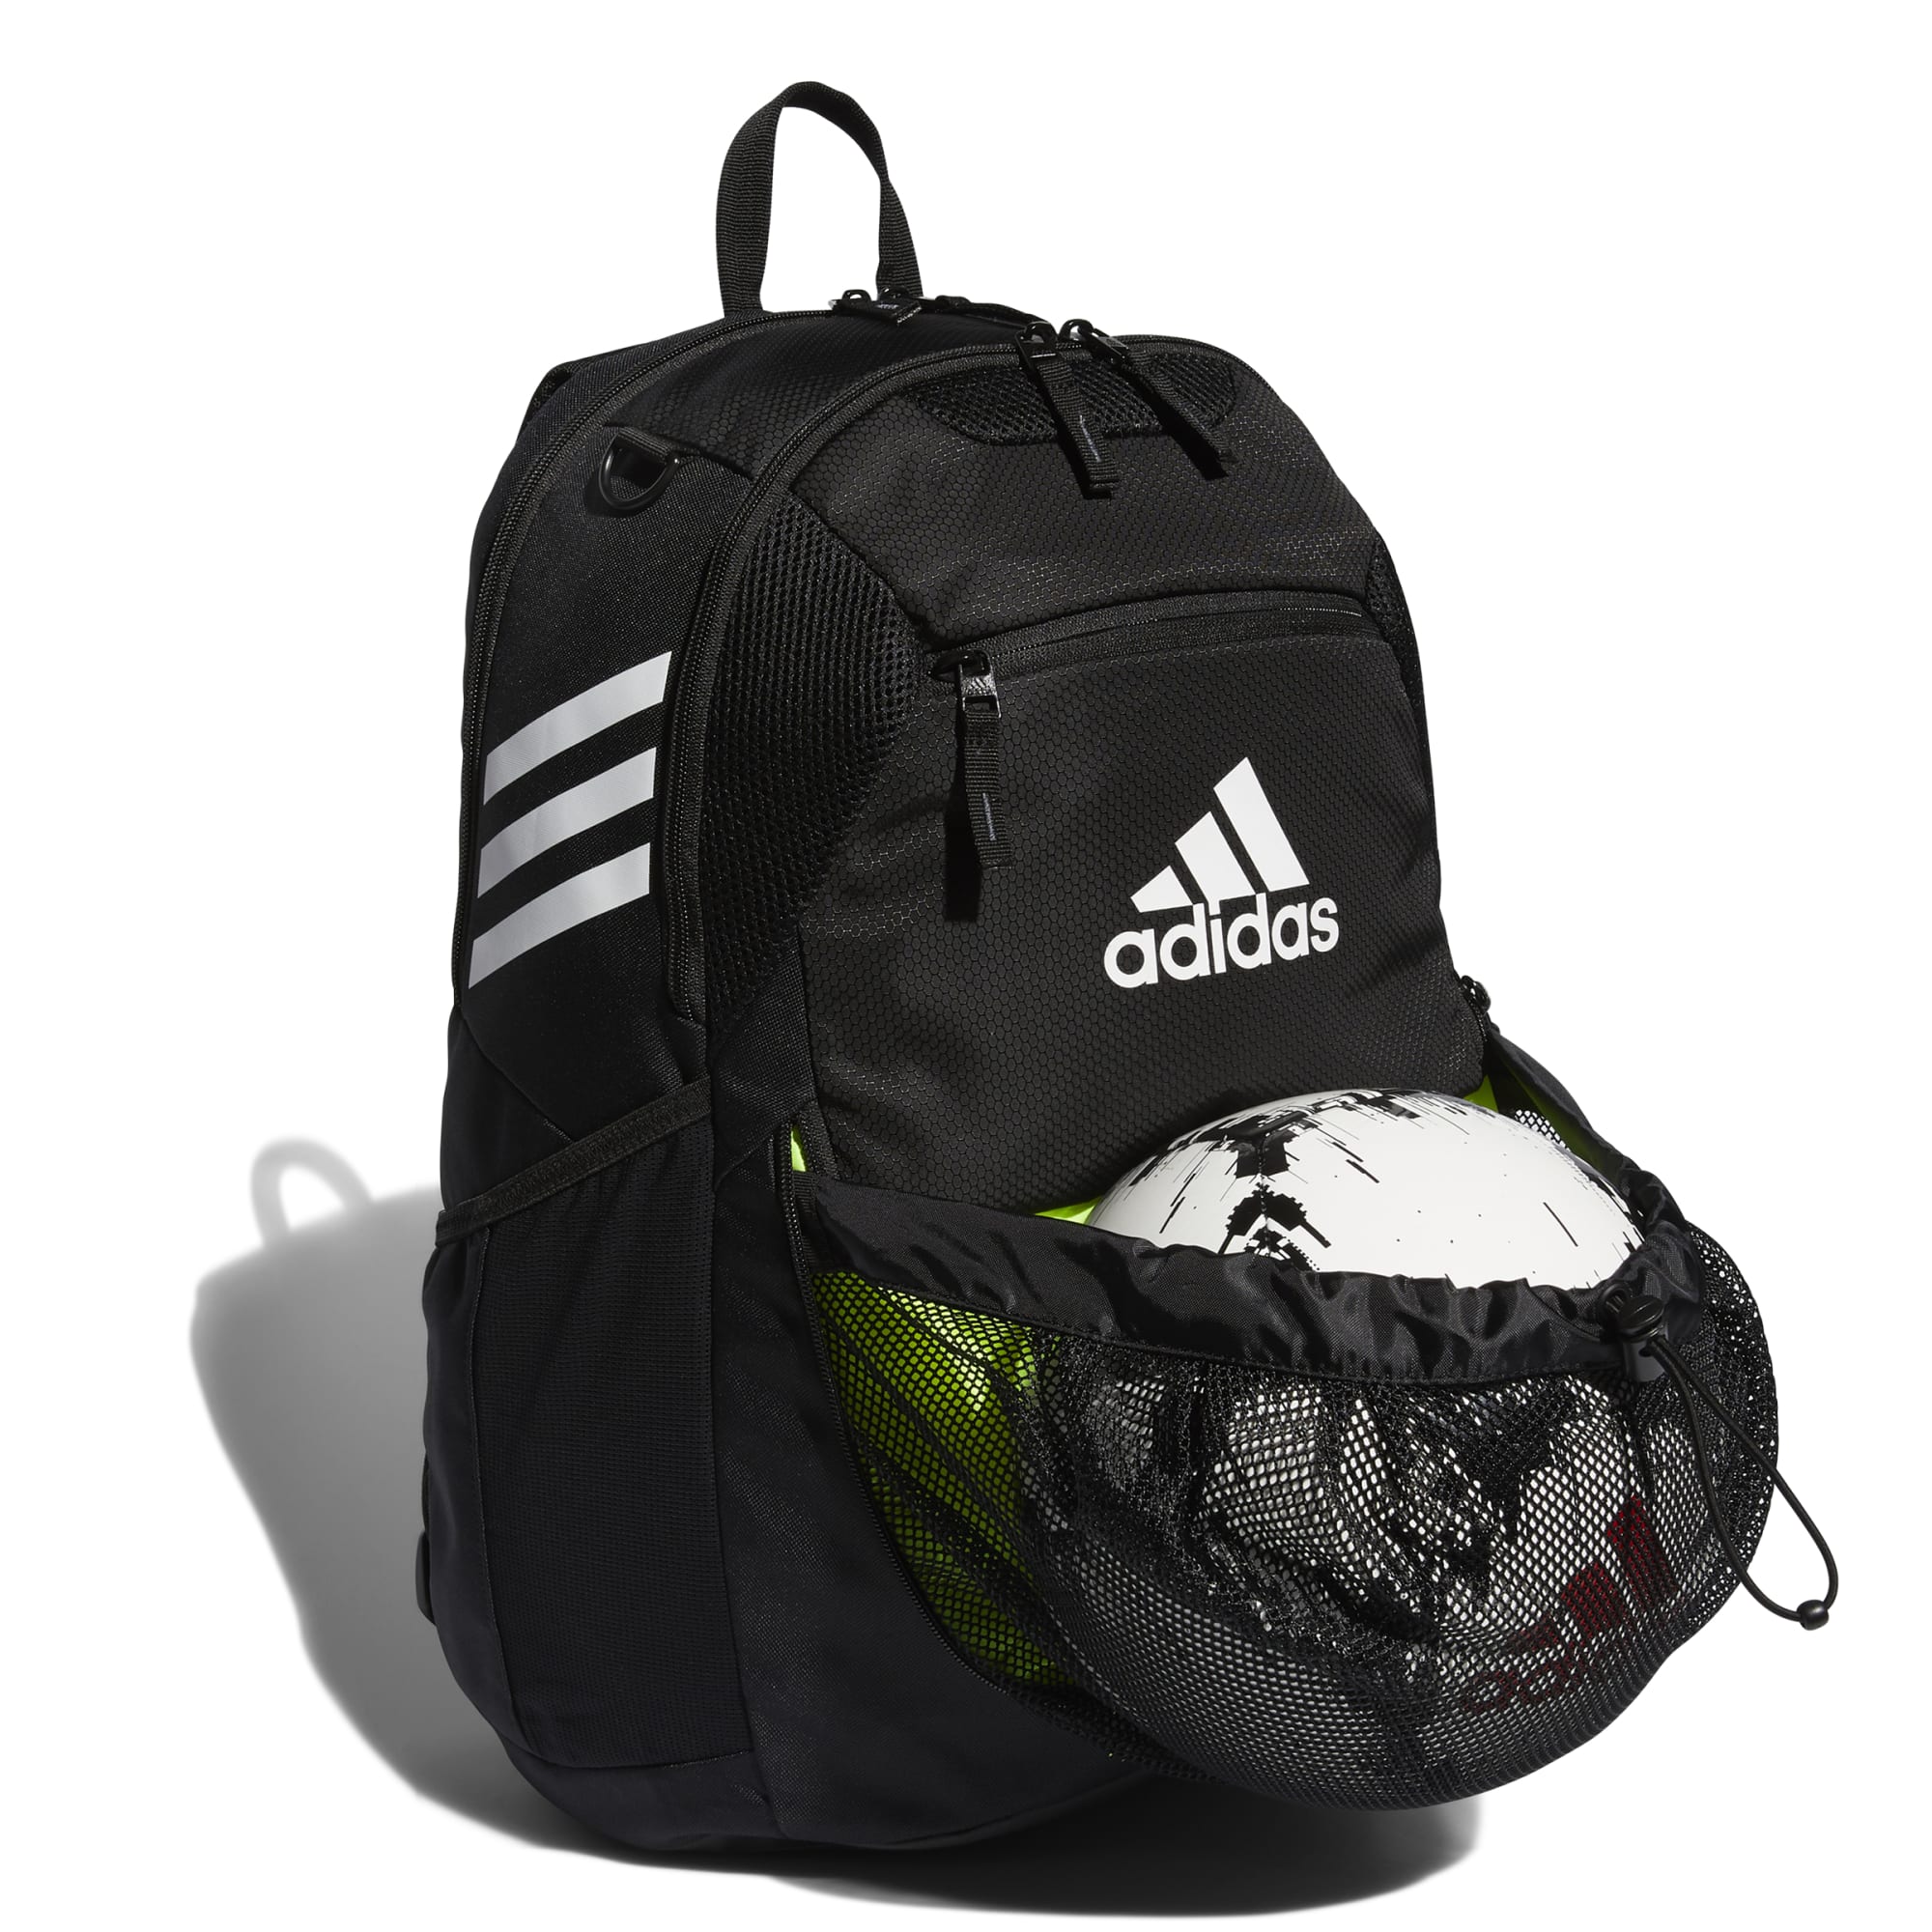 Adidas Stadium 3 Backpack Black - FZ6789